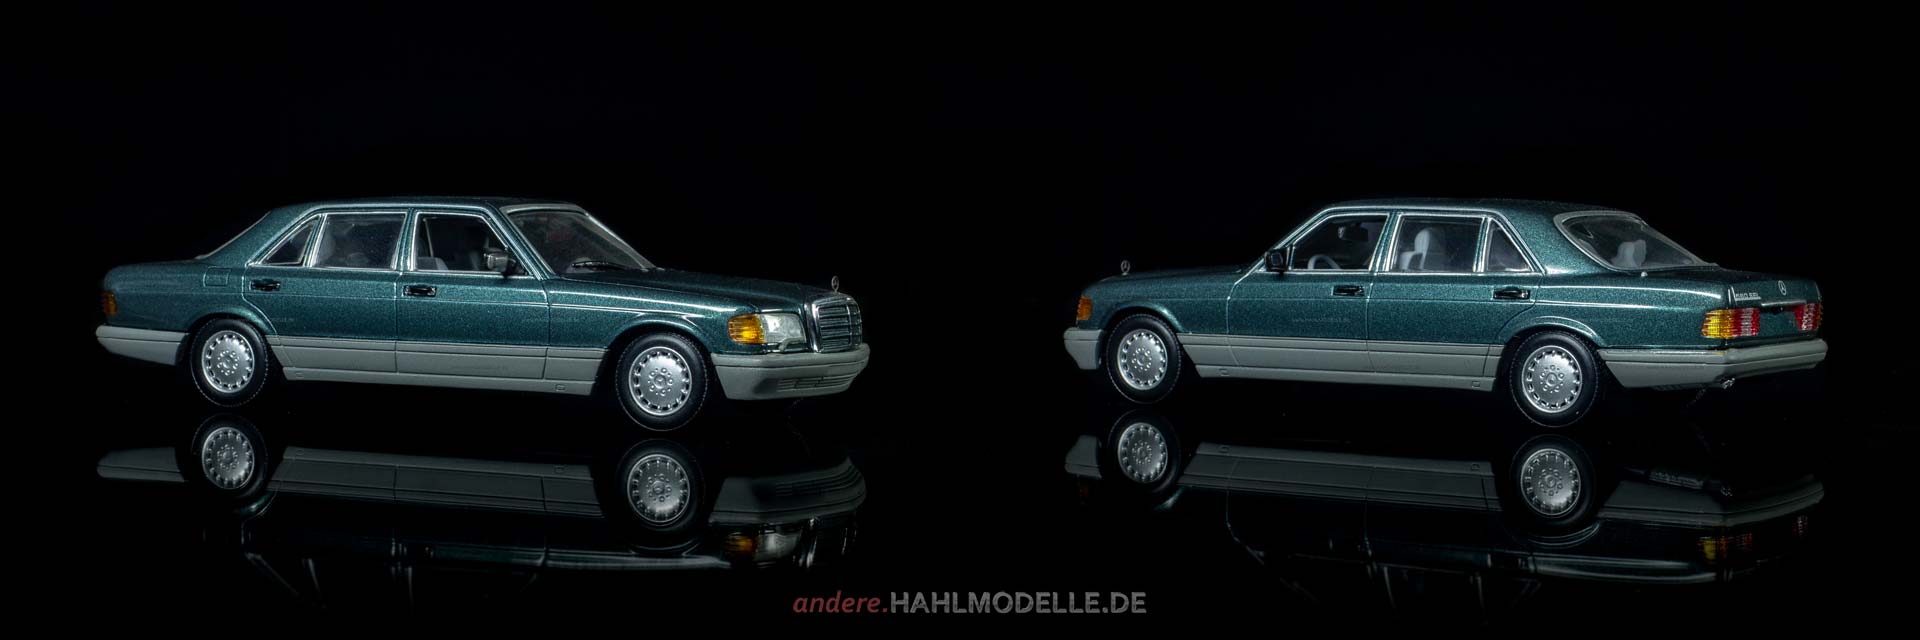 Mercedes-Benz 560 SEL (W 126 | Limousine | Minichamps | www.andere.hahlmodelle.de